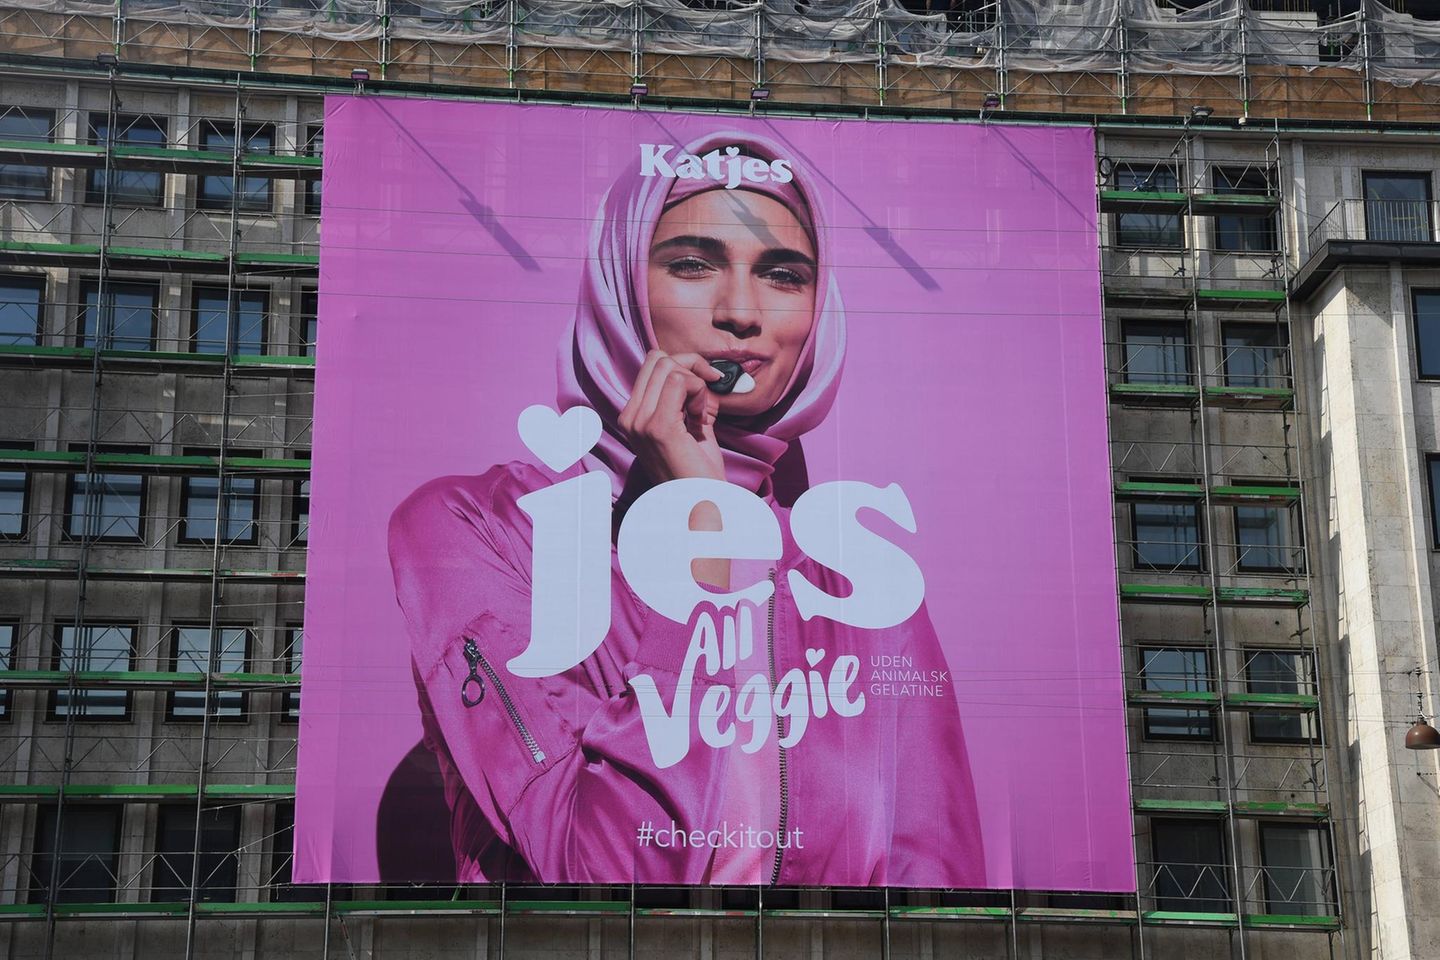 Katjes-Werbung für Veggie-Produkte in Kopenhagen